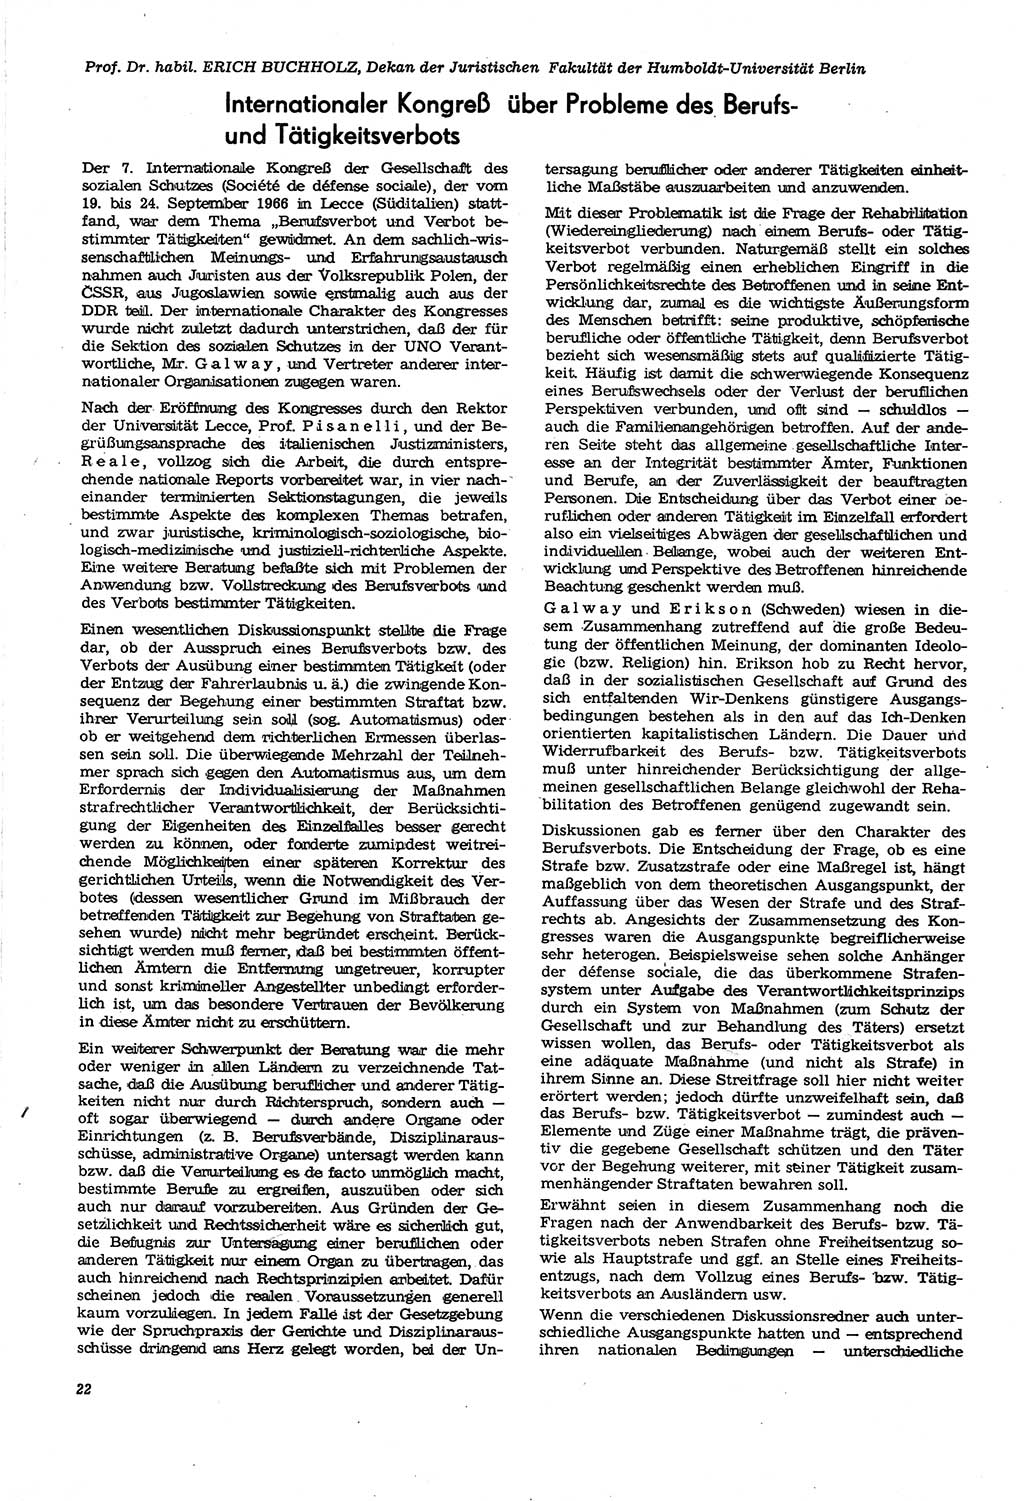 Neue Justiz (NJ), Zeitschrift für Recht und Rechtswissenschaft [Deutsche Demokratische Republik (DDR)], 21. Jahrgang 1967, Seite 22 (NJ DDR 1967, S. 22)